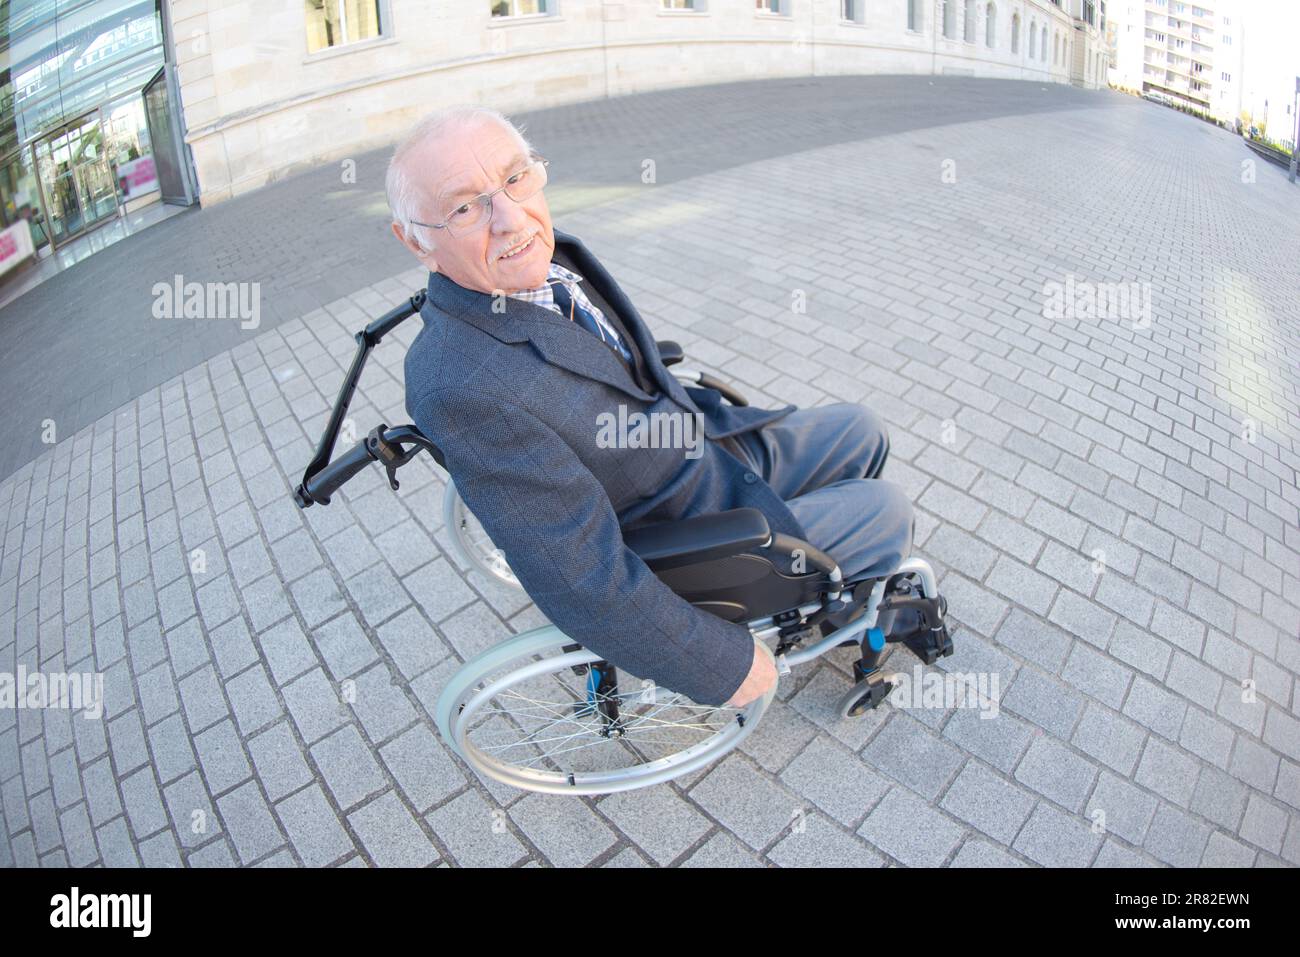 Fischaugensicht bei älteren Menschen im Rollstuhl im städtischen Umfeld Stockfoto